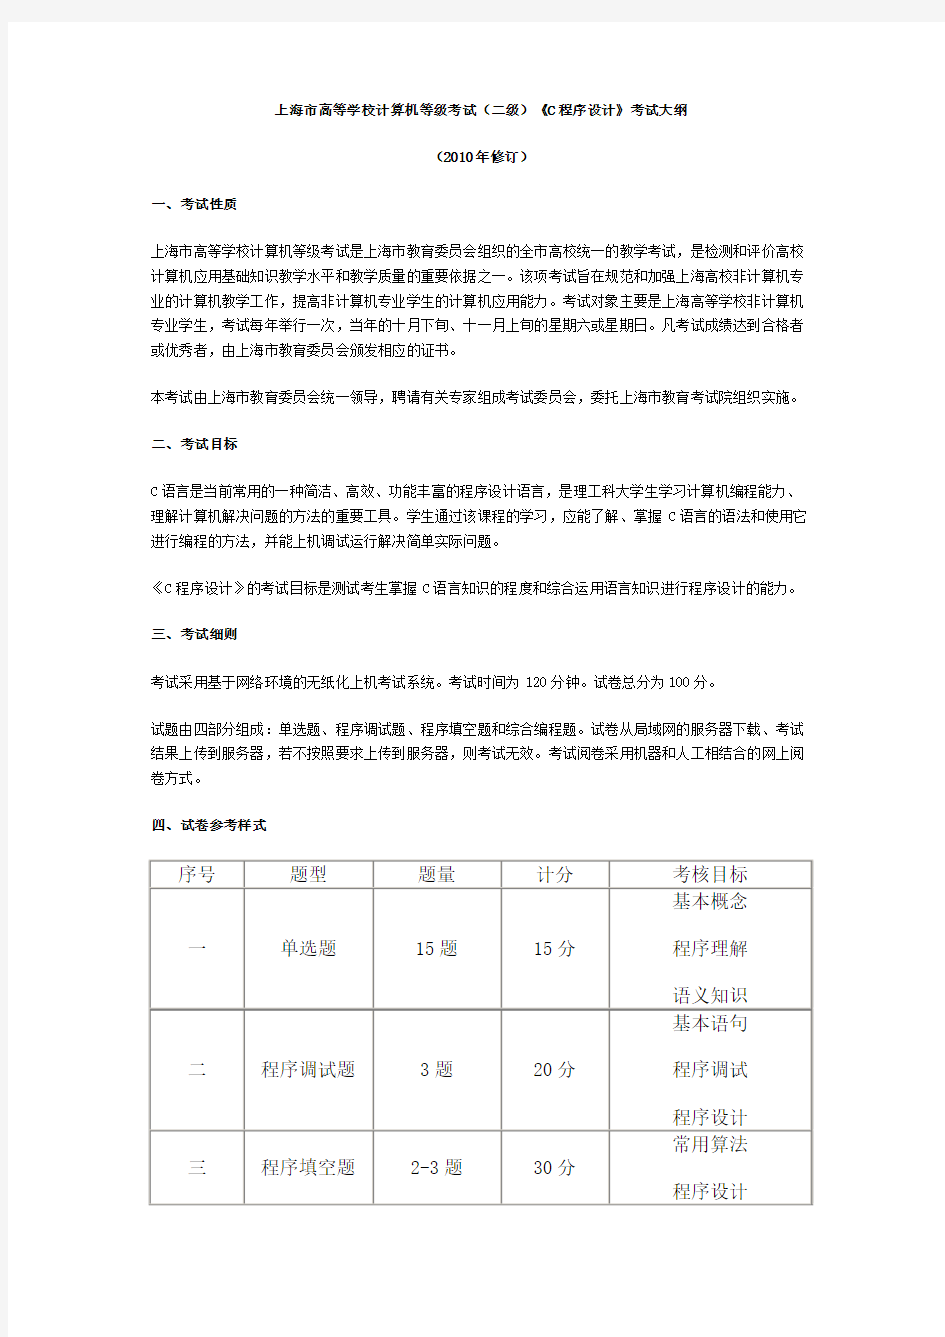 上海市高等学校计算机等级考试(二级)考试大纲